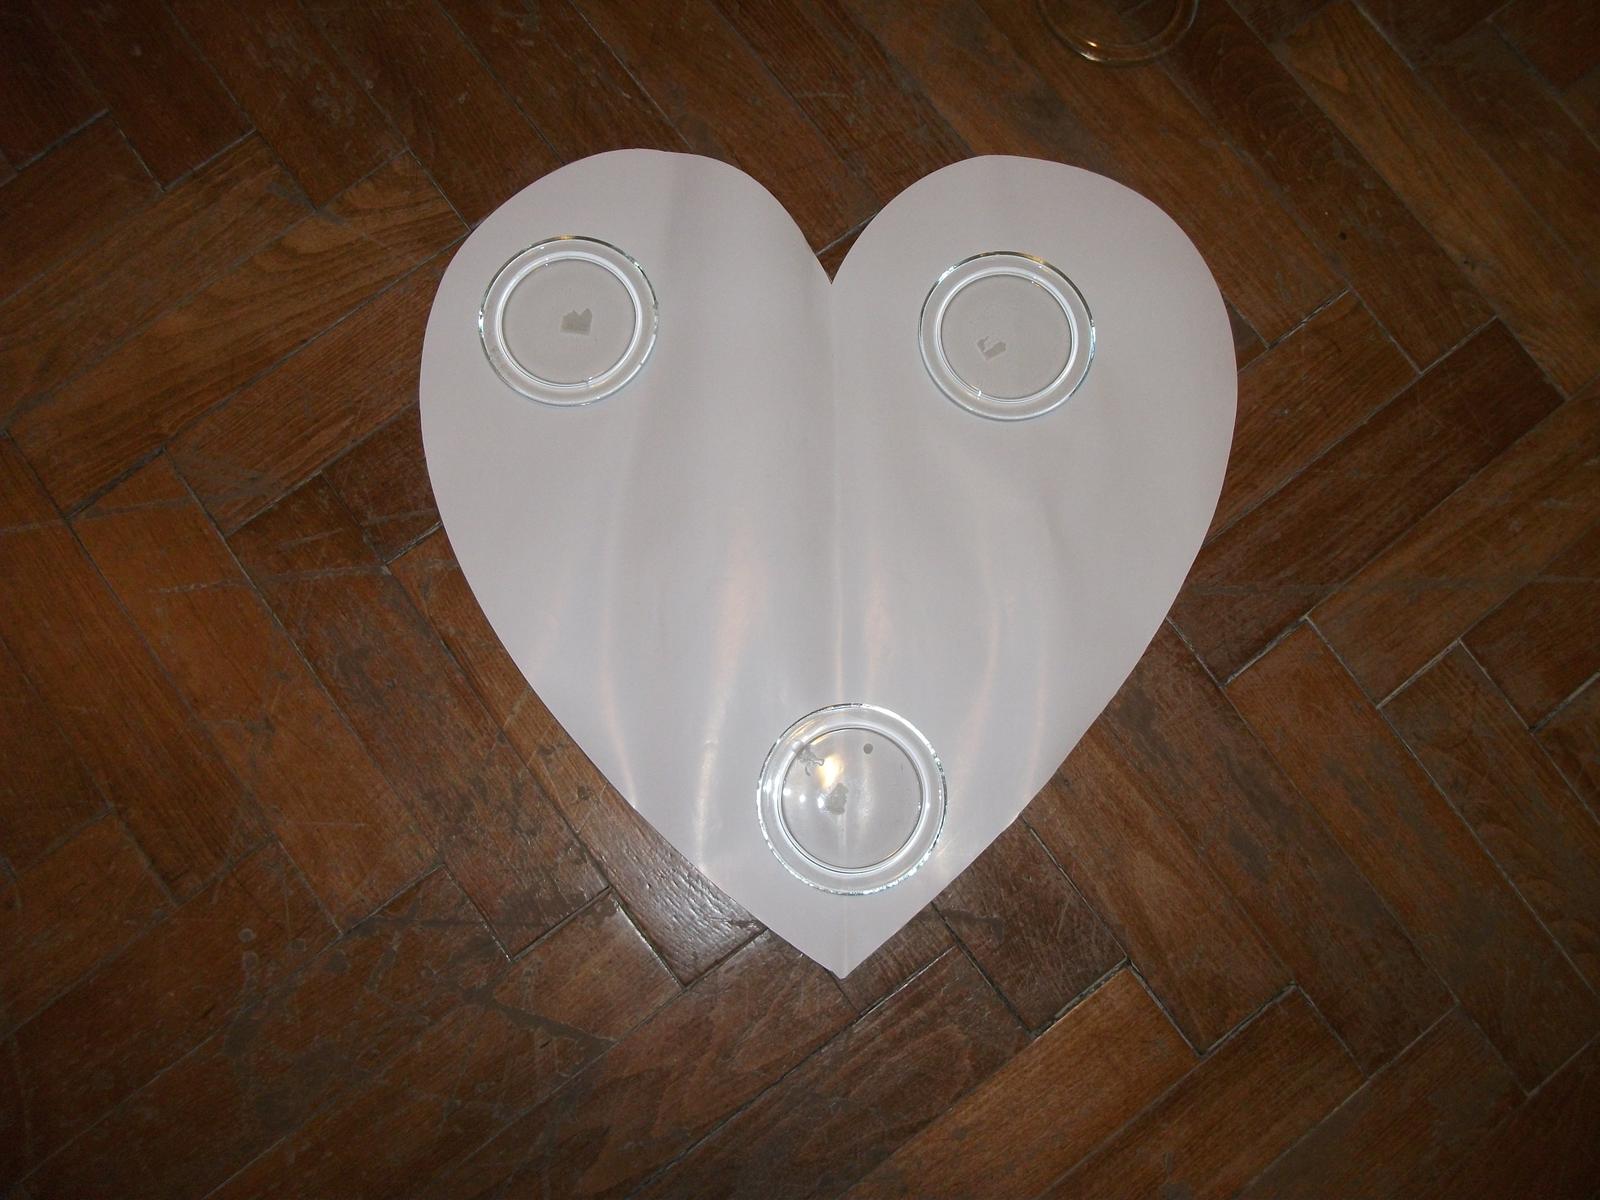 Šablony srdce- velikost 60x60cm - Obrázek č. 1